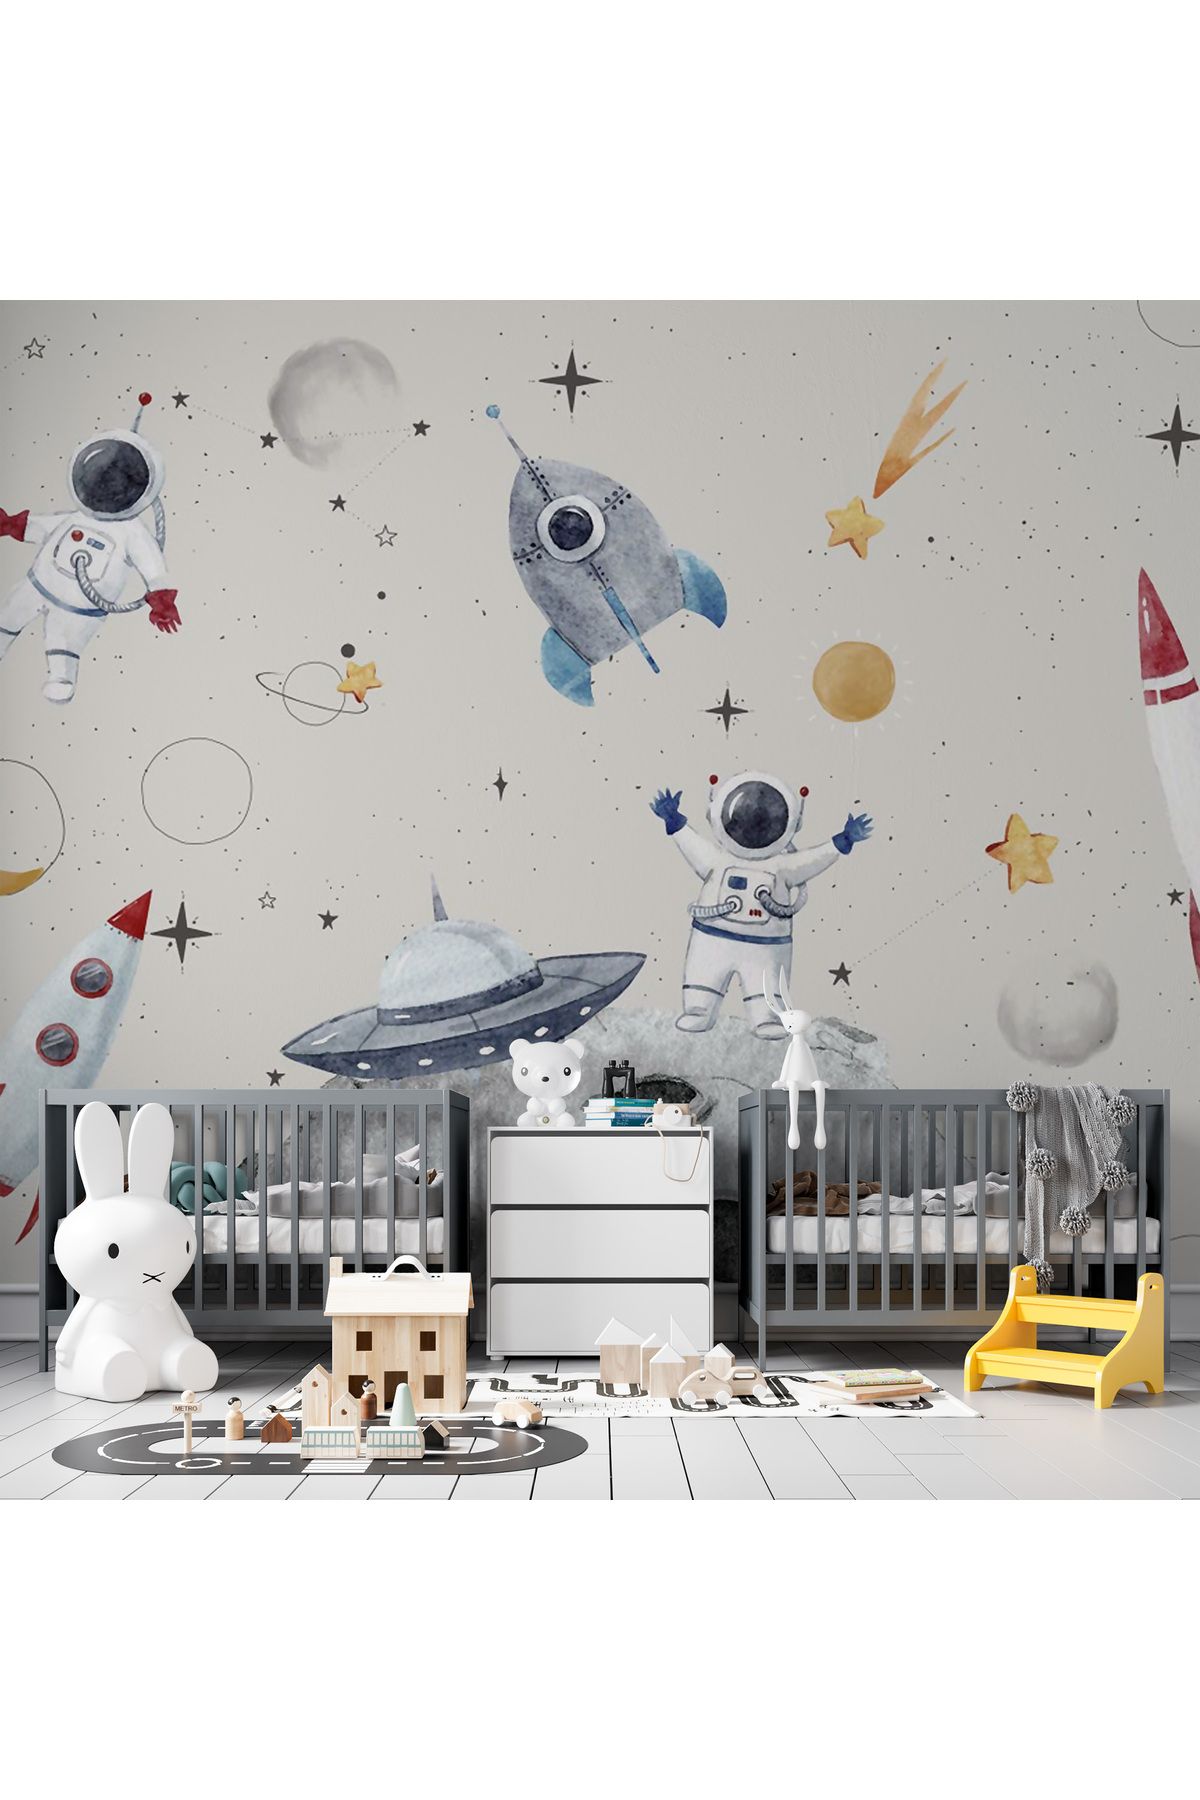 Plustablo Uzay Temalı Astronot Uzay Gemisi ve Gezegenli Bebek Çocuk Odası Poster Duvar Kağıdı